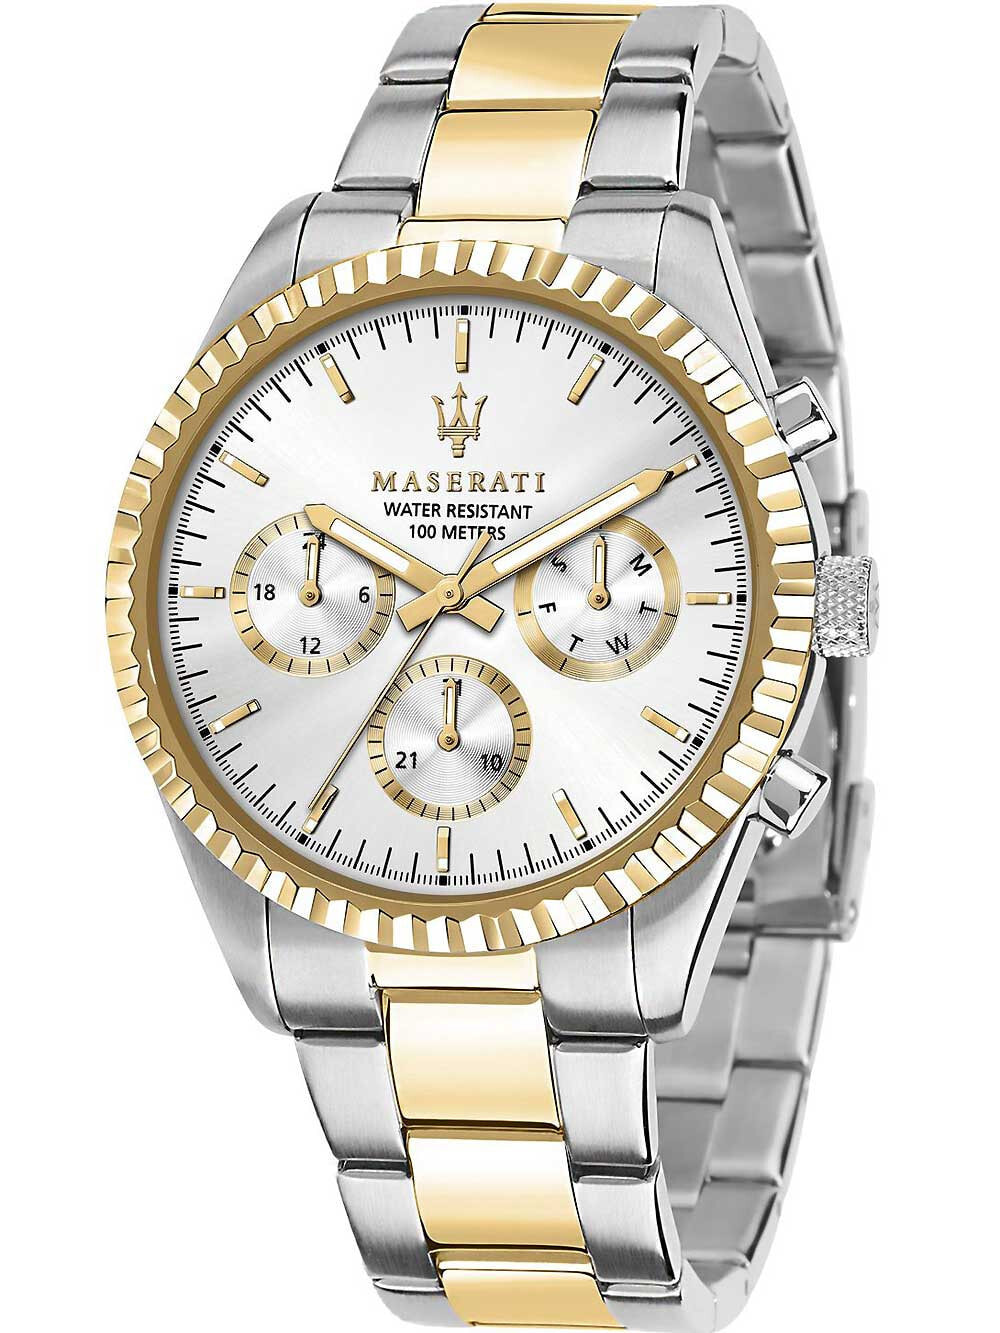 Мужские наручные часы с серебряным золотым браслетом Maserati R8853100021 Competizione mens watch 43mm 10ATM